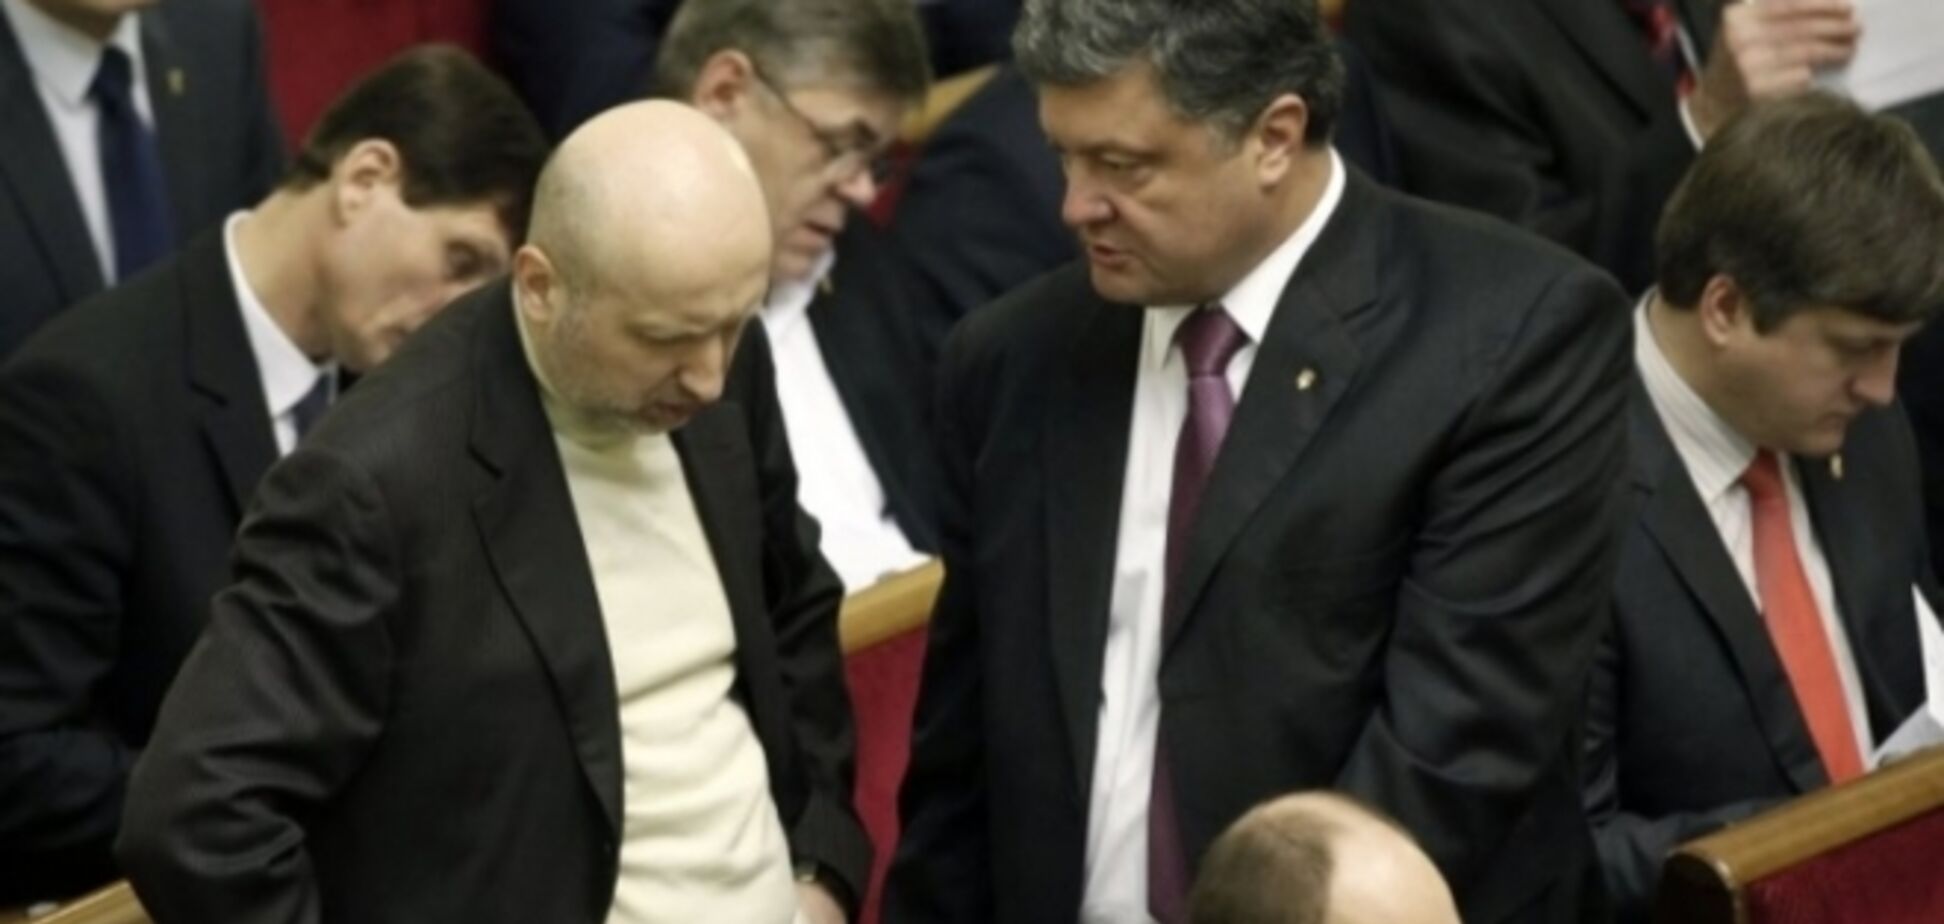 Рада на внеочередном заседании вернется к рассмотрению бюджетных законов и отставке Яценюка